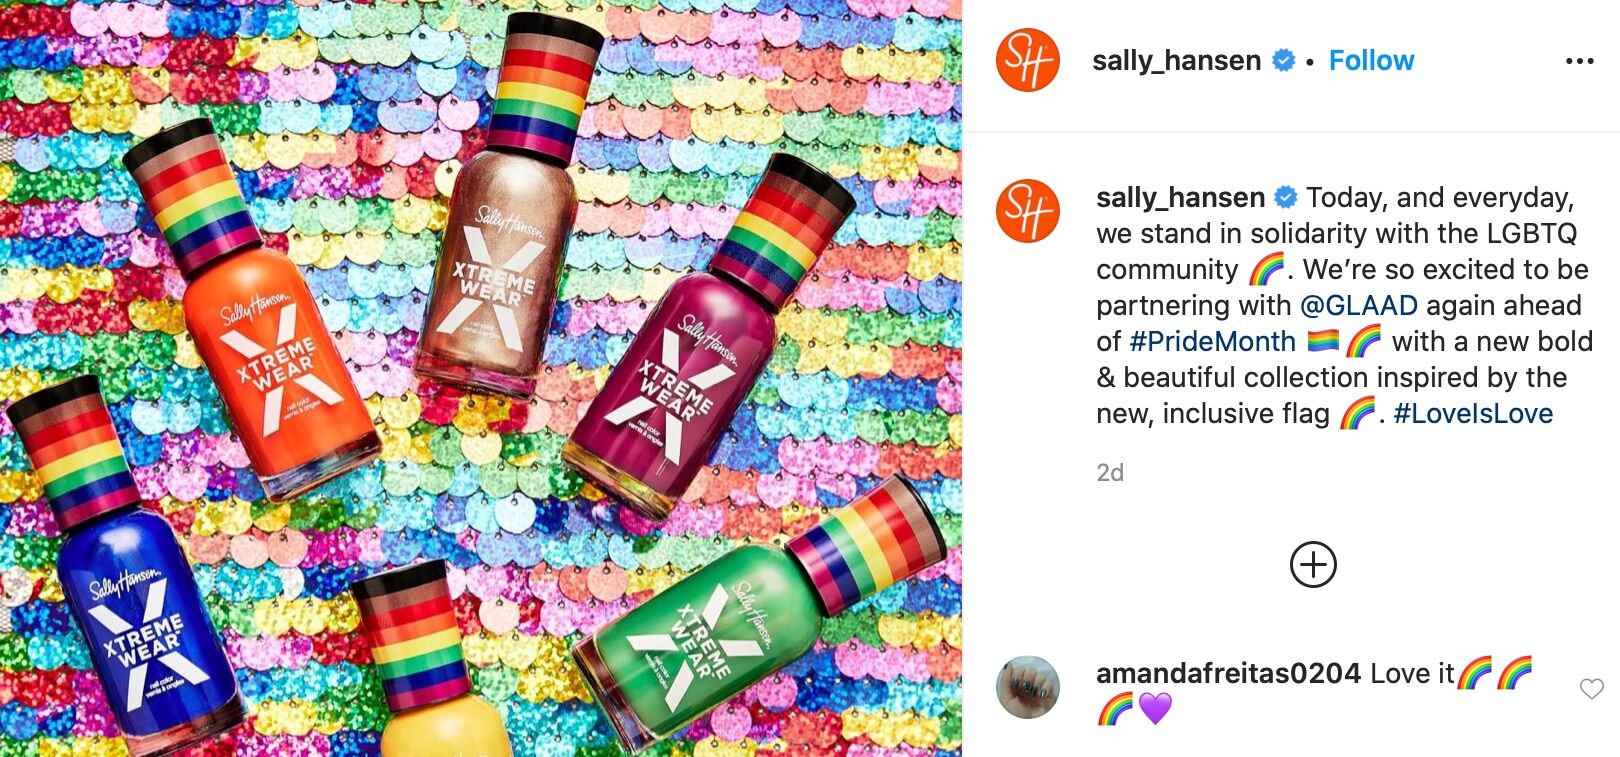 Sally Hansen's 2020 Pride collection